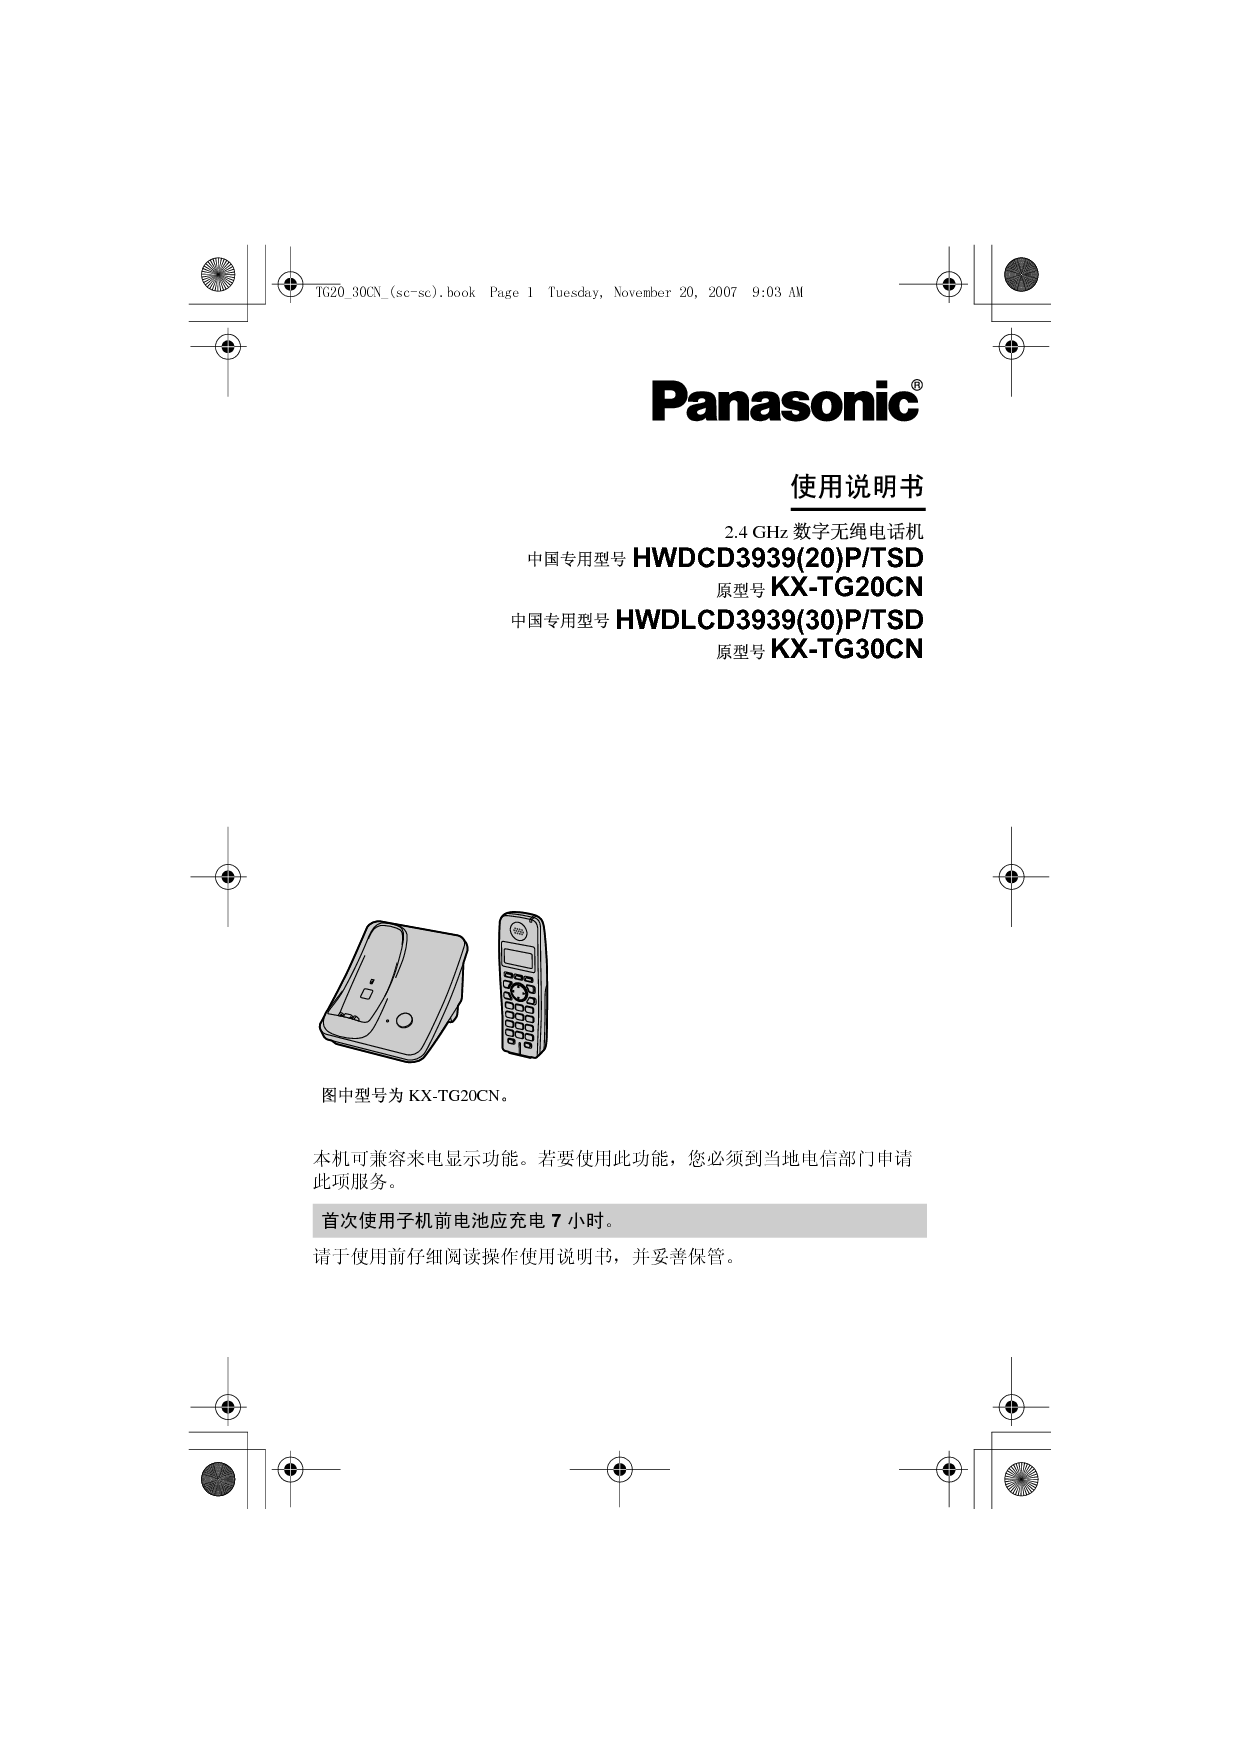 松下 Panasonic HWDCD3939(20)P/TSD, KX-TG20CN 说明书 封面